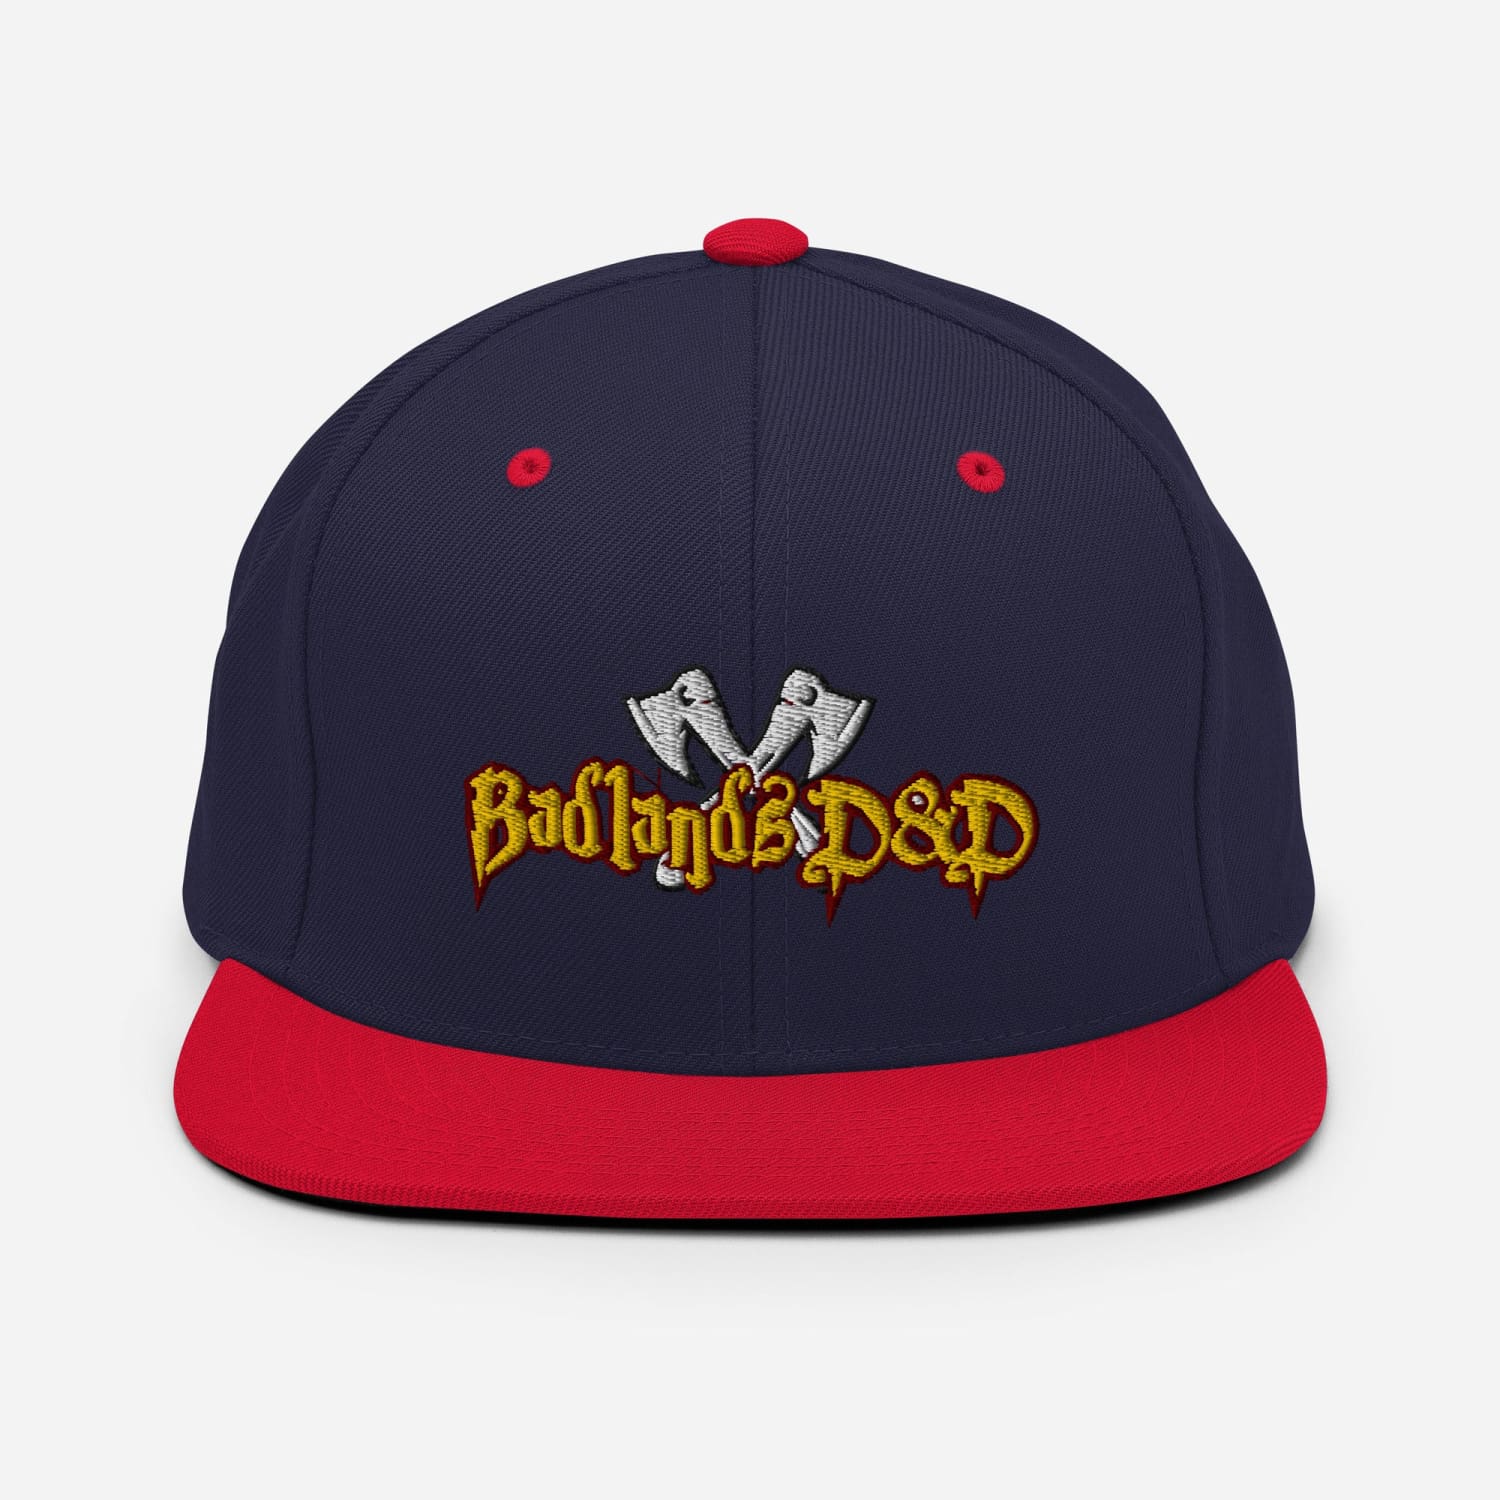 Badlands D&D Logo Classic Snapback Cap - Navy/ Red